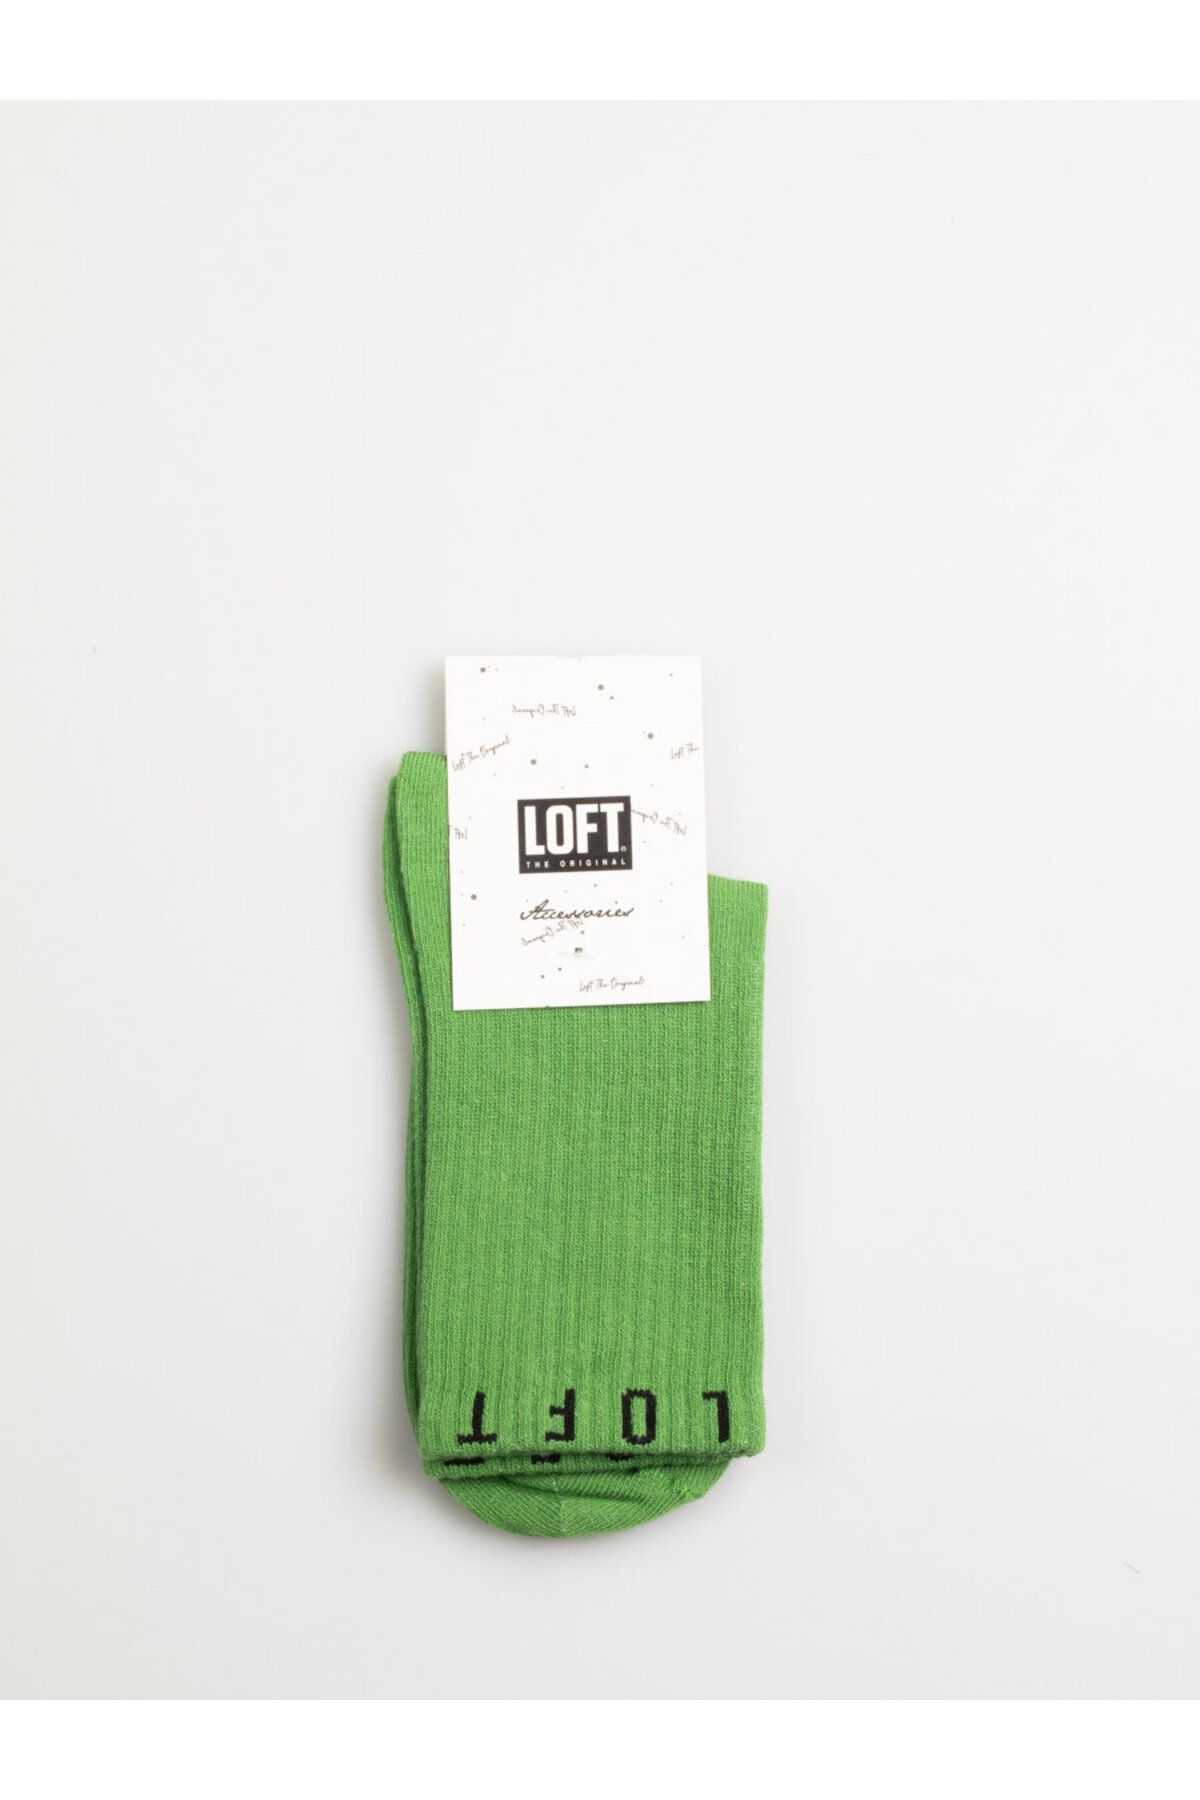 Loft Kadın Çorap